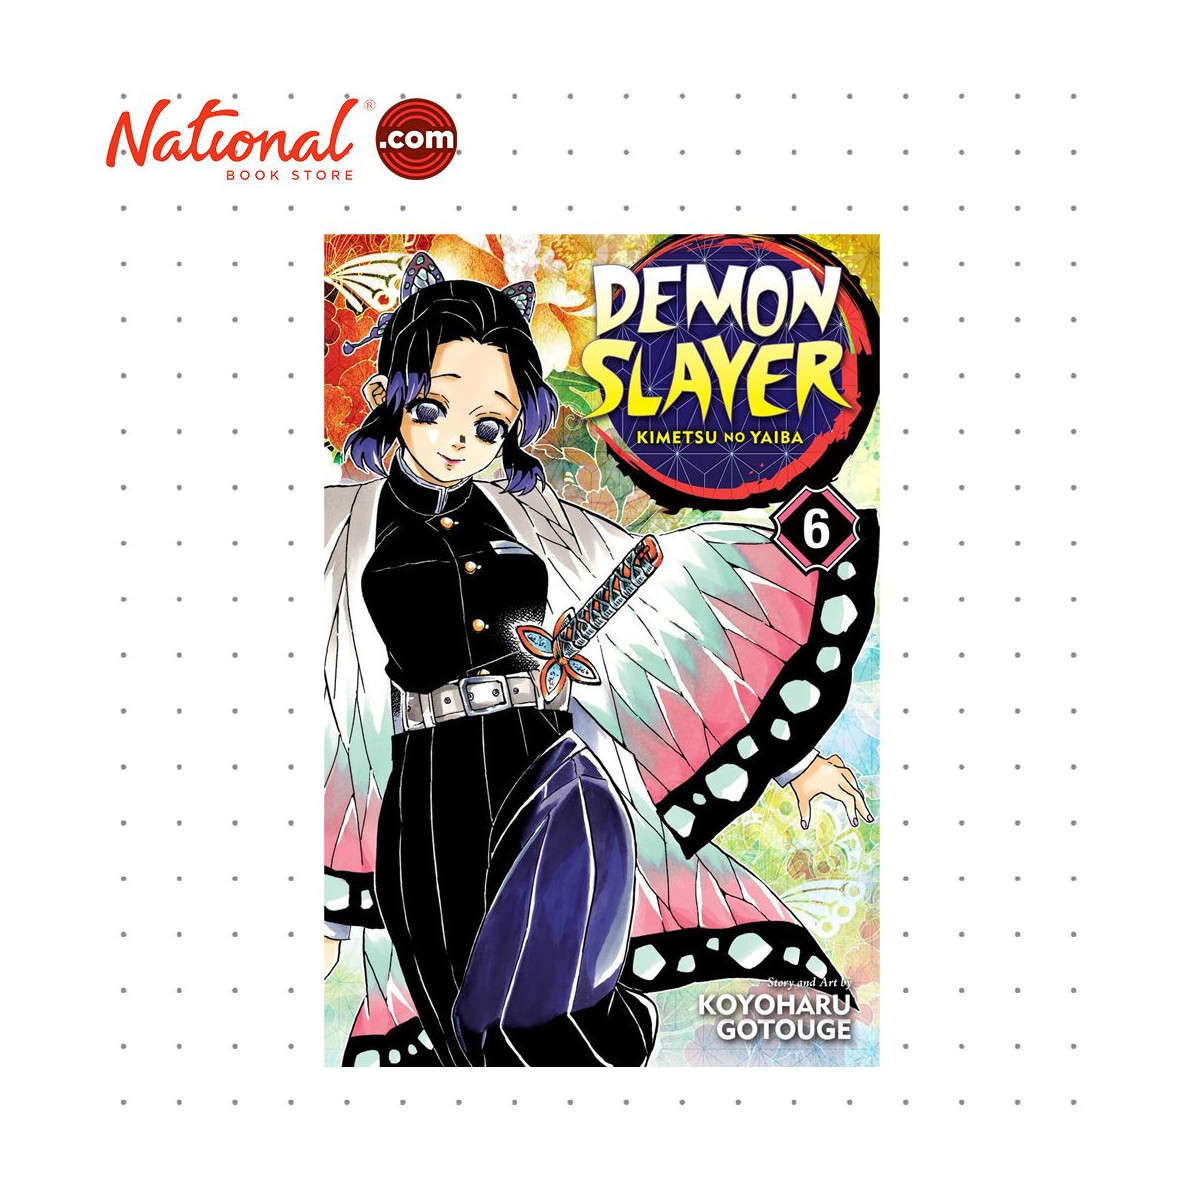 Demon Slayer Kimetsu no Yaiba, Anime Travel Guide